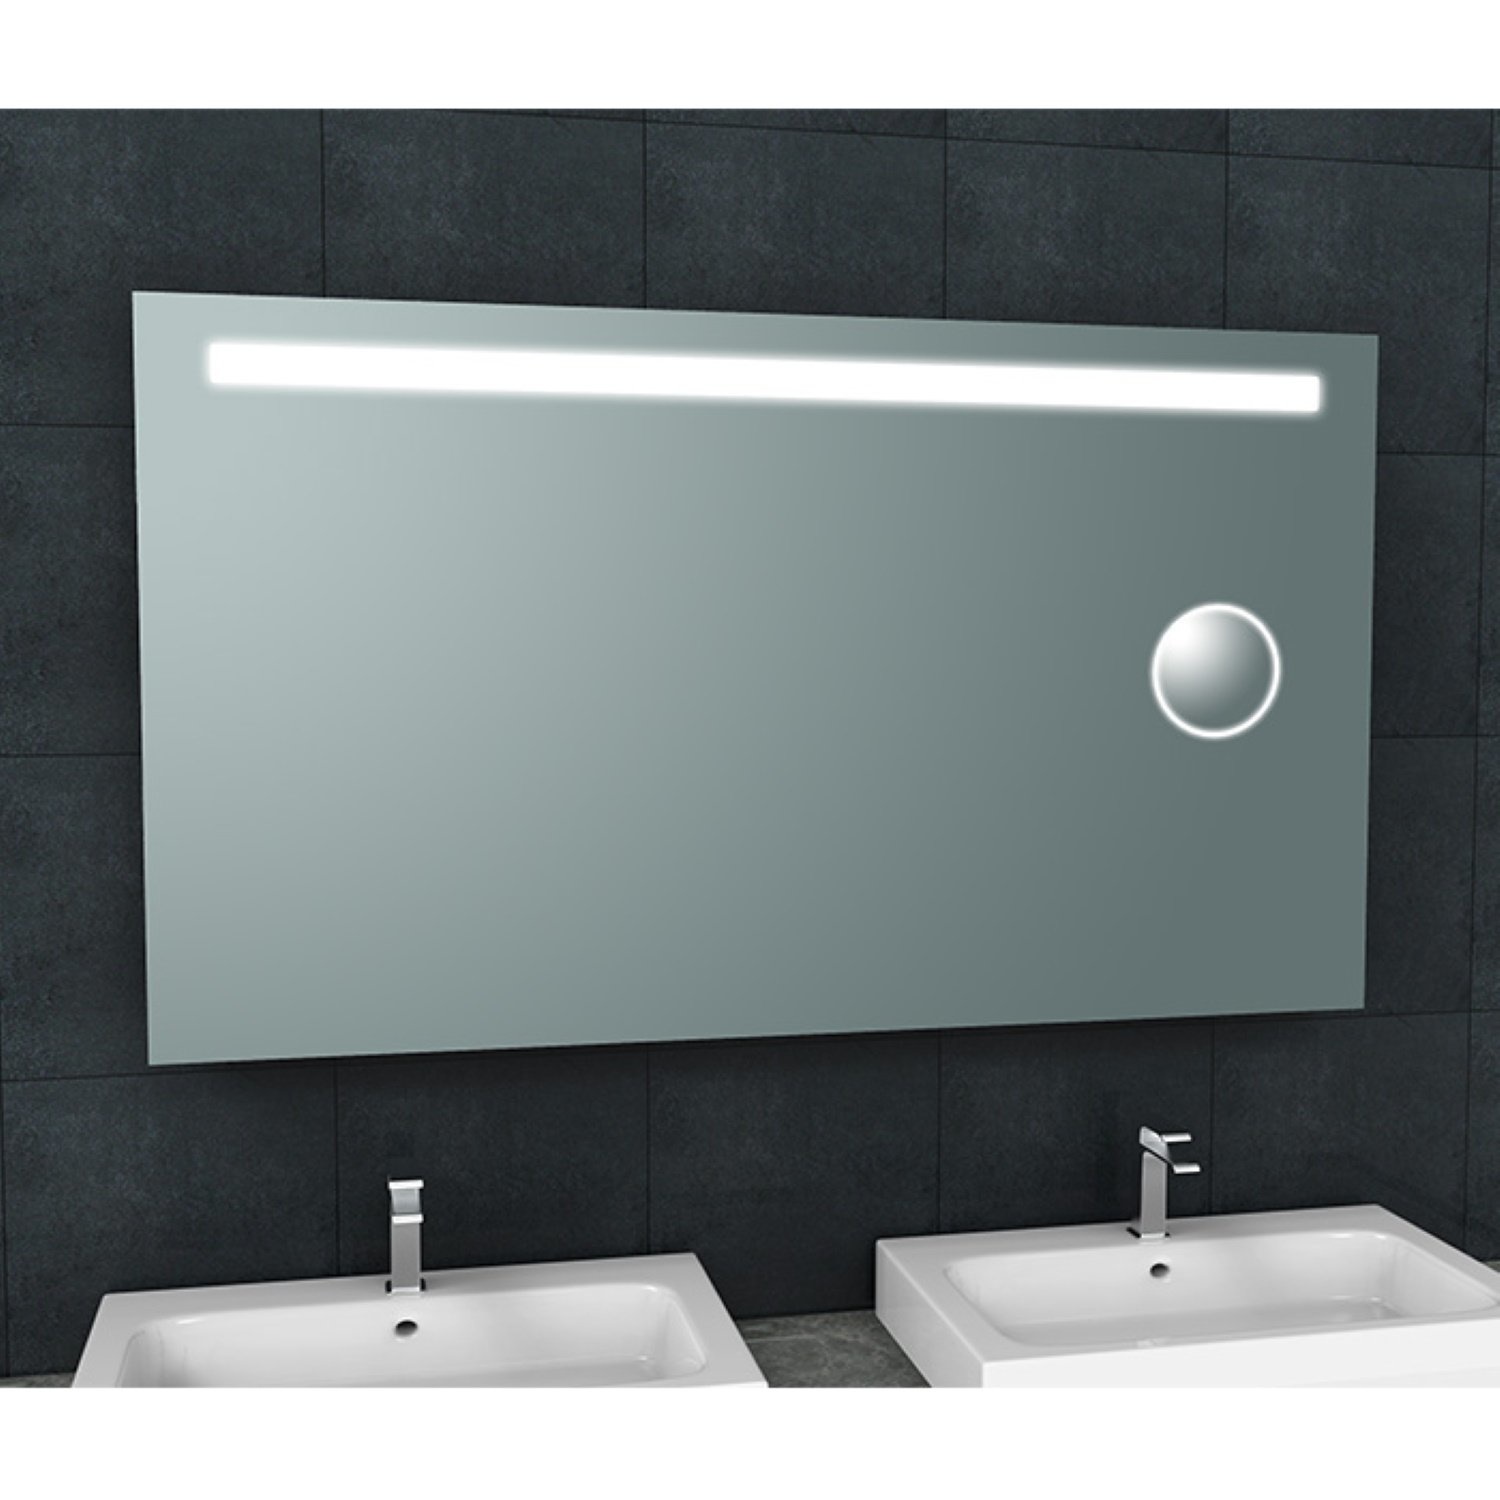 Badkamerspiegel Aqua Splash Mire Rechthoek Inclusief LED Verlichting + Scheerspiegel 140 cm Aqua Spl